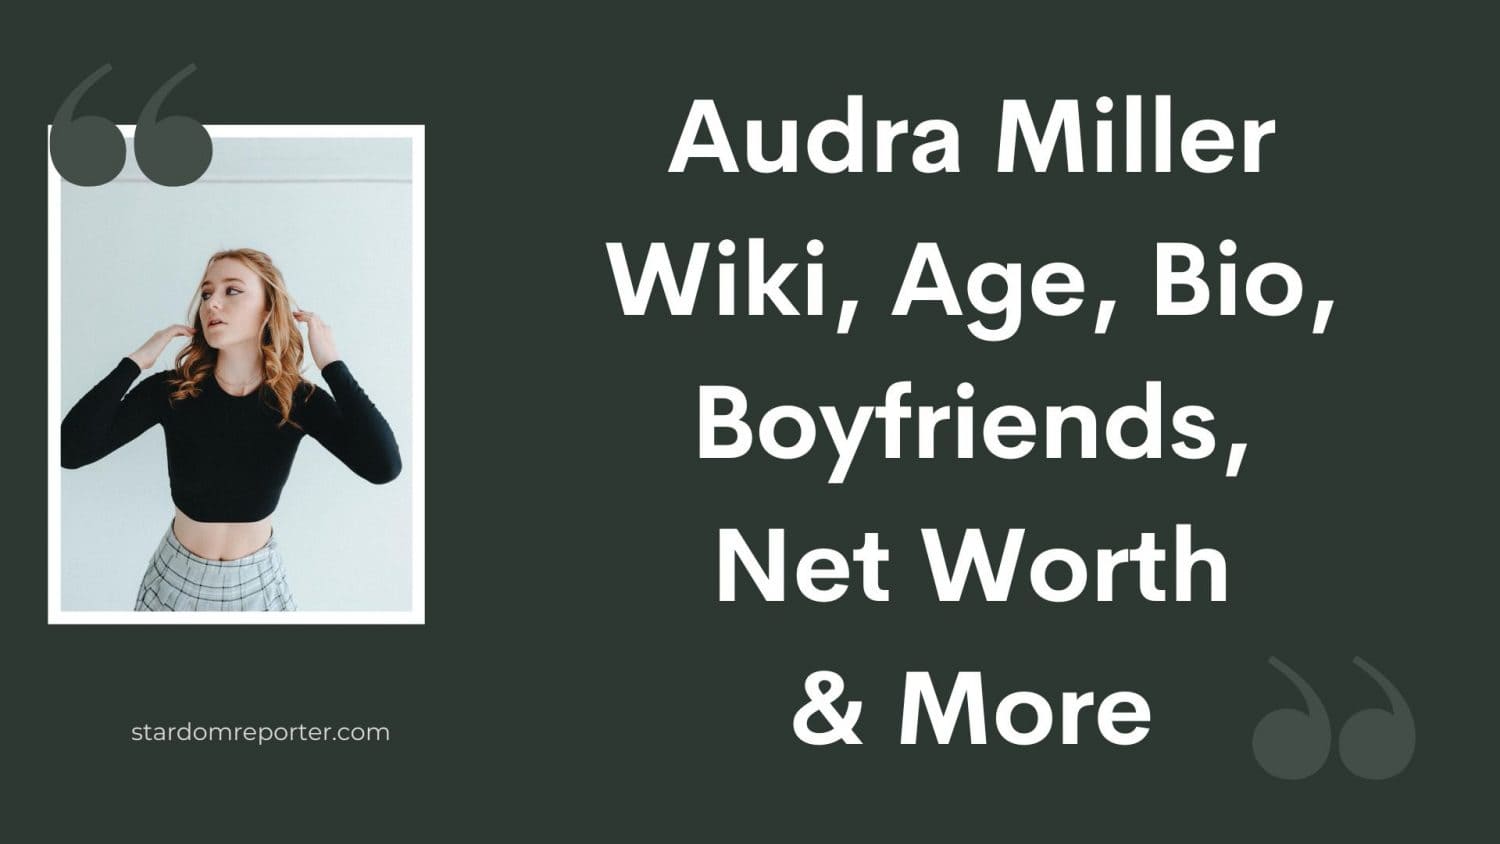 Audra Miller Wiki, Age, Bio, Boyfriends, Net Worth & More - 21